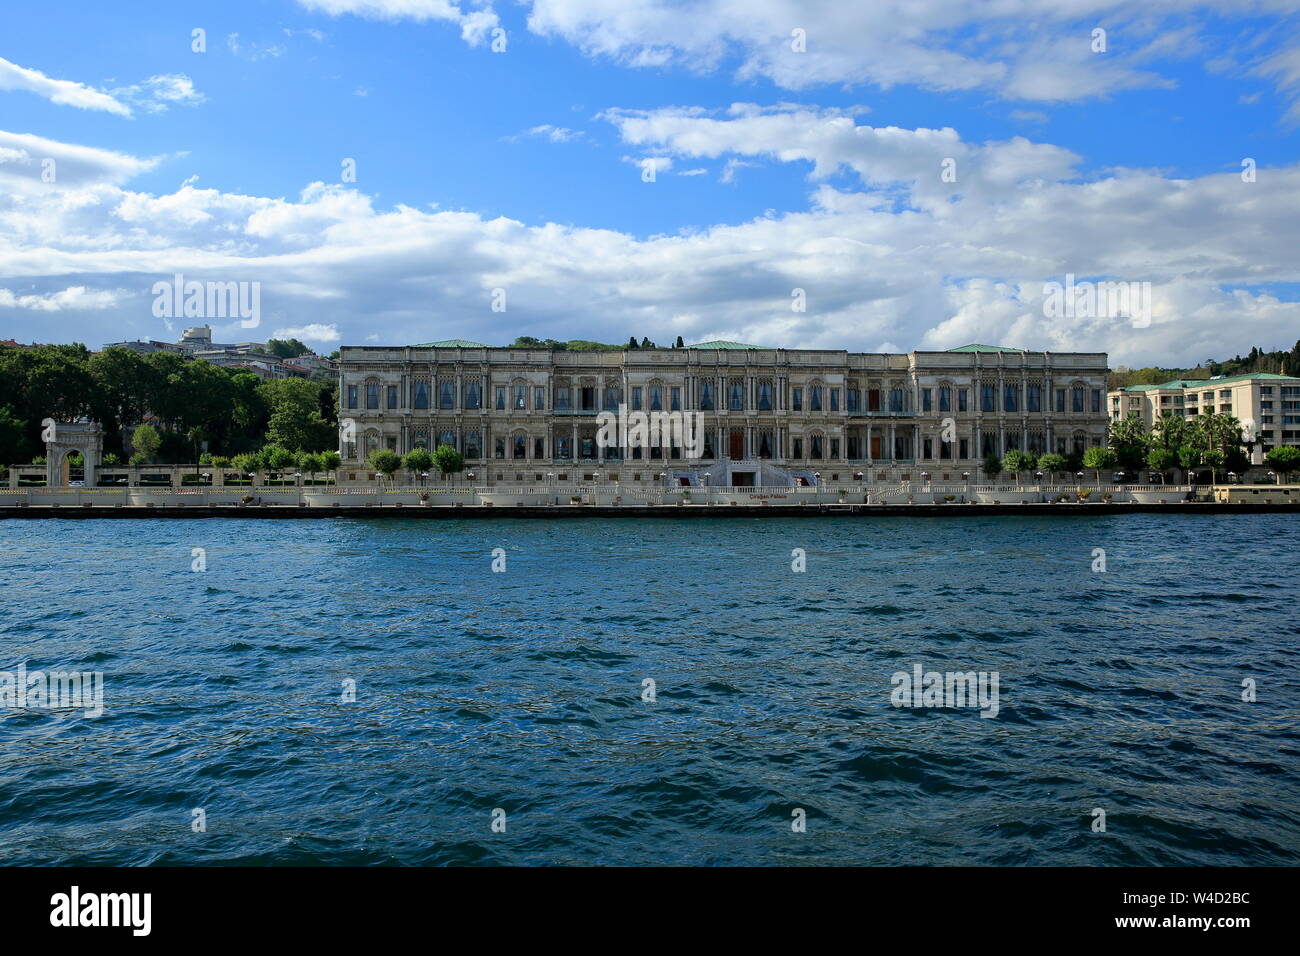 Istanbul, Türkei - 11 Juli 2019: Ciragan Palace. İ t ist eine der schönsten Paläste, wo die Sultane in der Vergangenheit gelebt. Baujahr 1865. Stockfoto